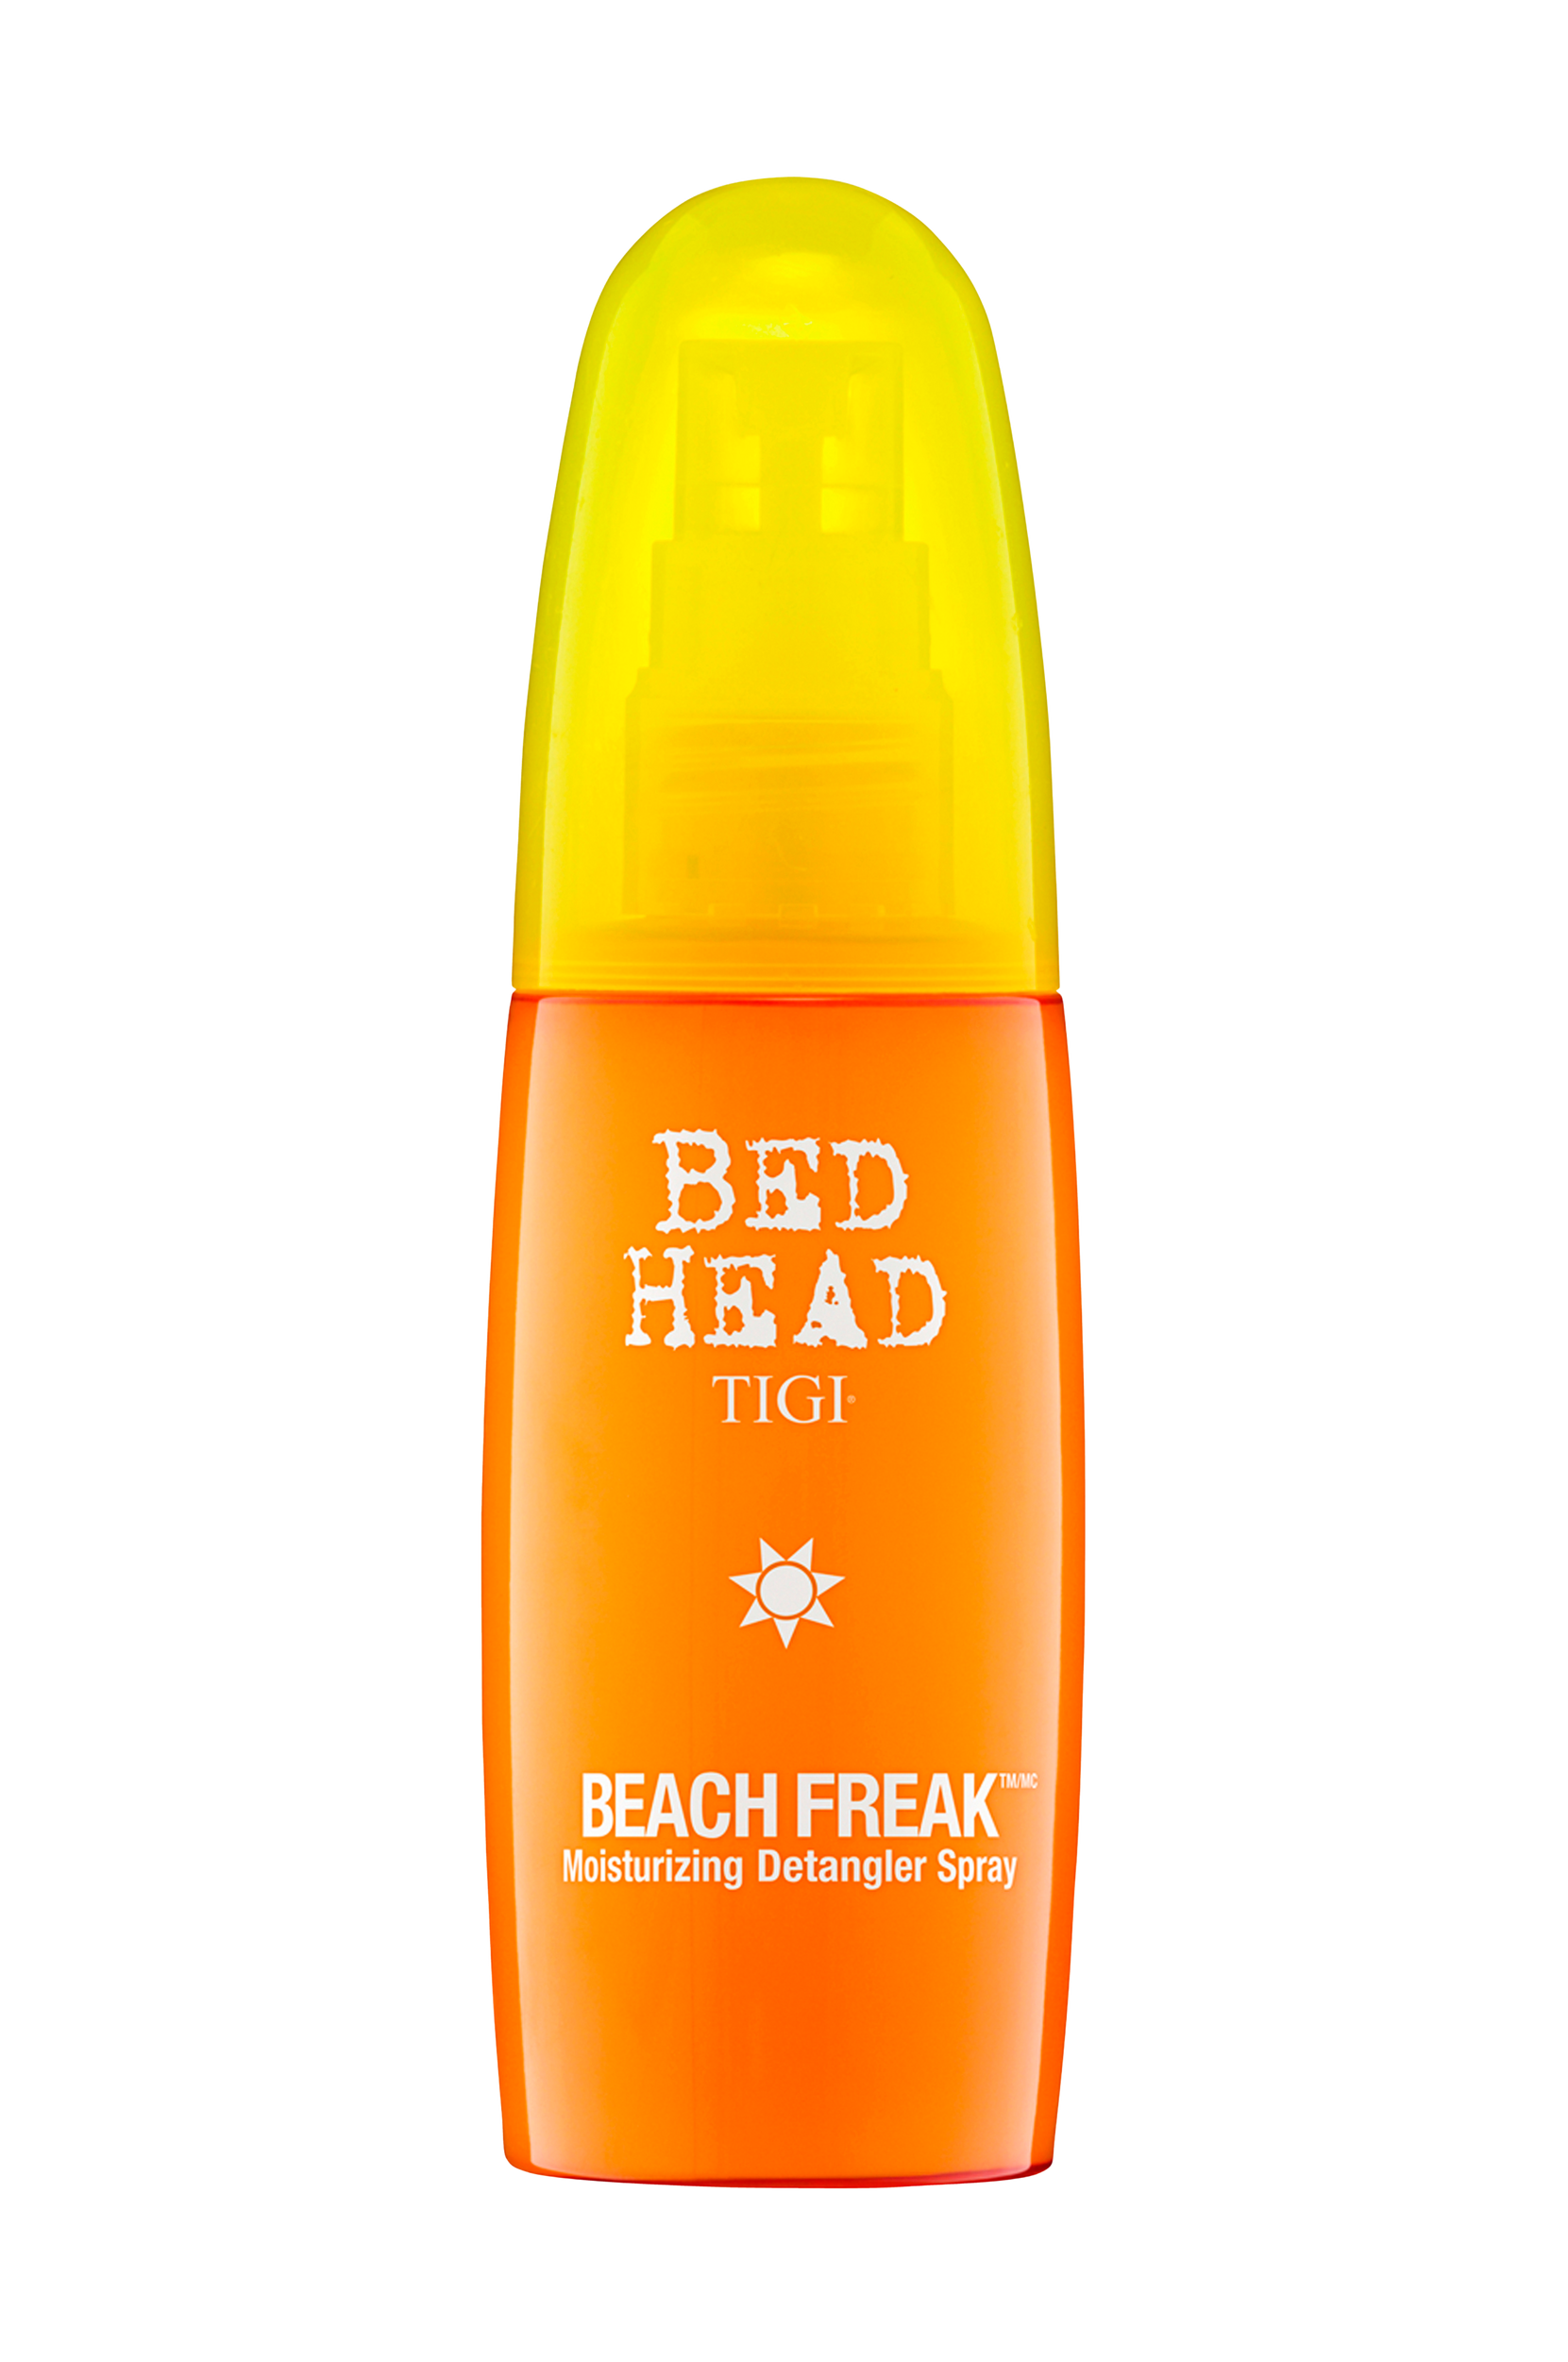 Beach Freak Detangler Spray 100 ml, Tigi